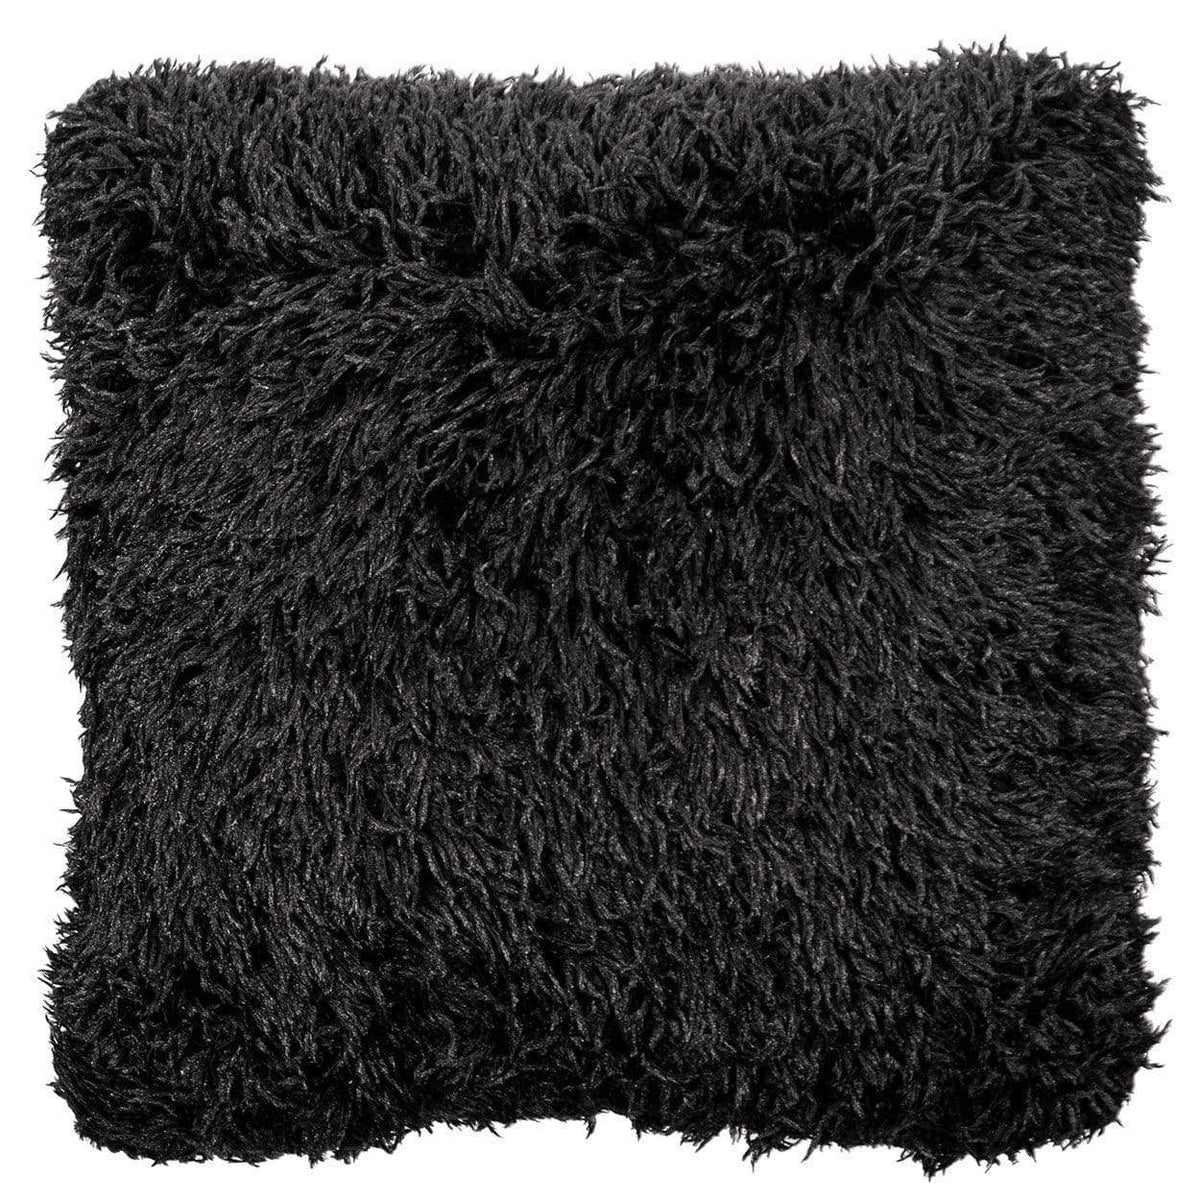 Pandemonium Millinery Pillow Sham - Black Swan Faux Fur 16&quot; Square / Add Pillow Form / Black Swan Home decor